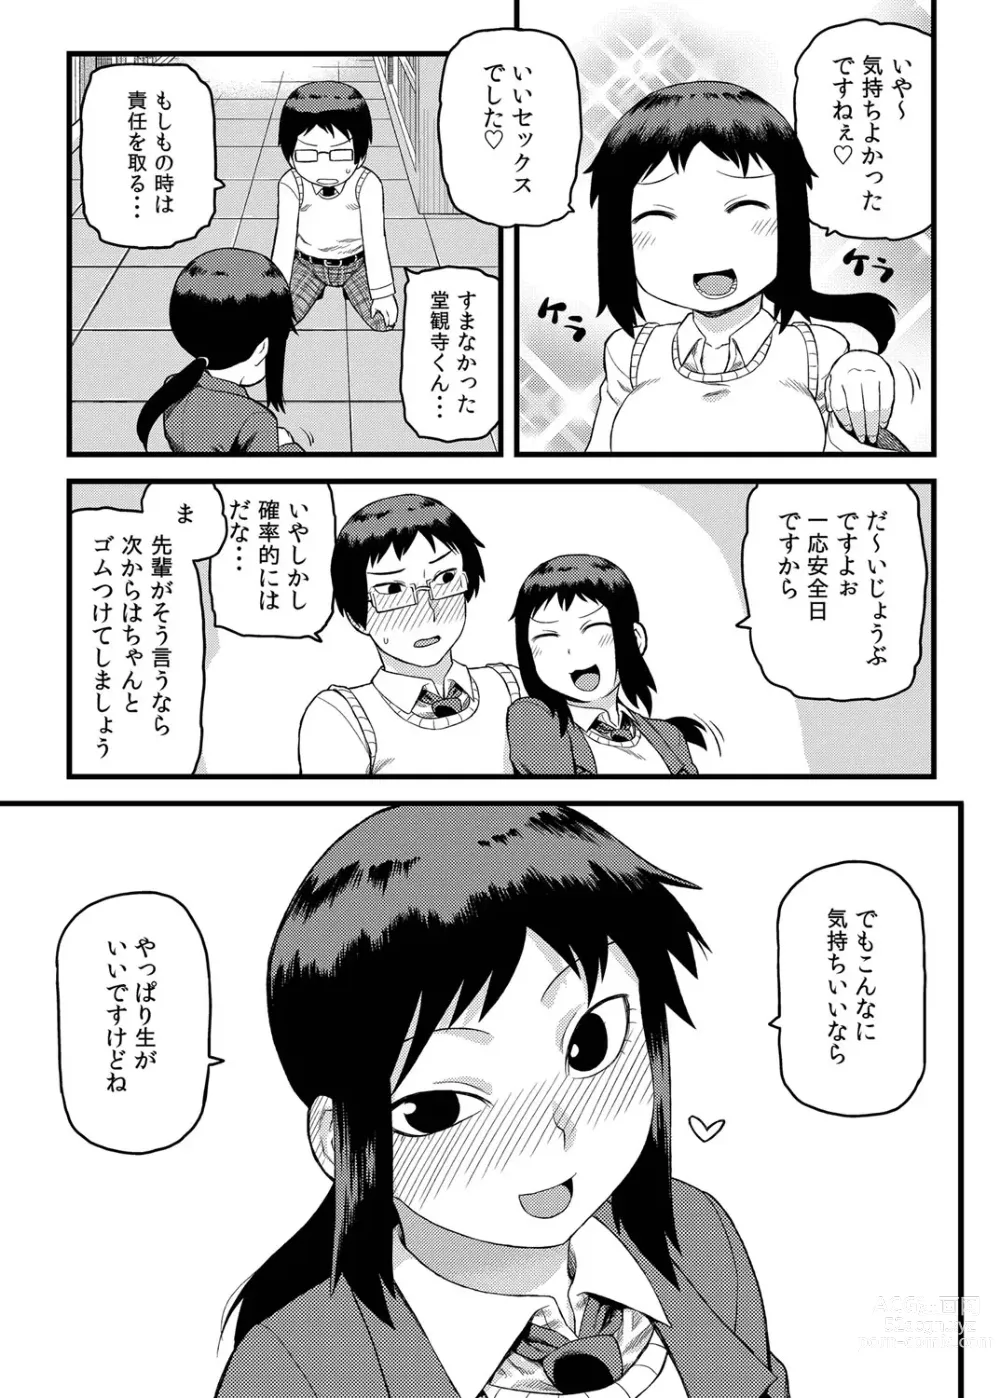 Page 24 of manga Toshoshitsu no Senpai to.